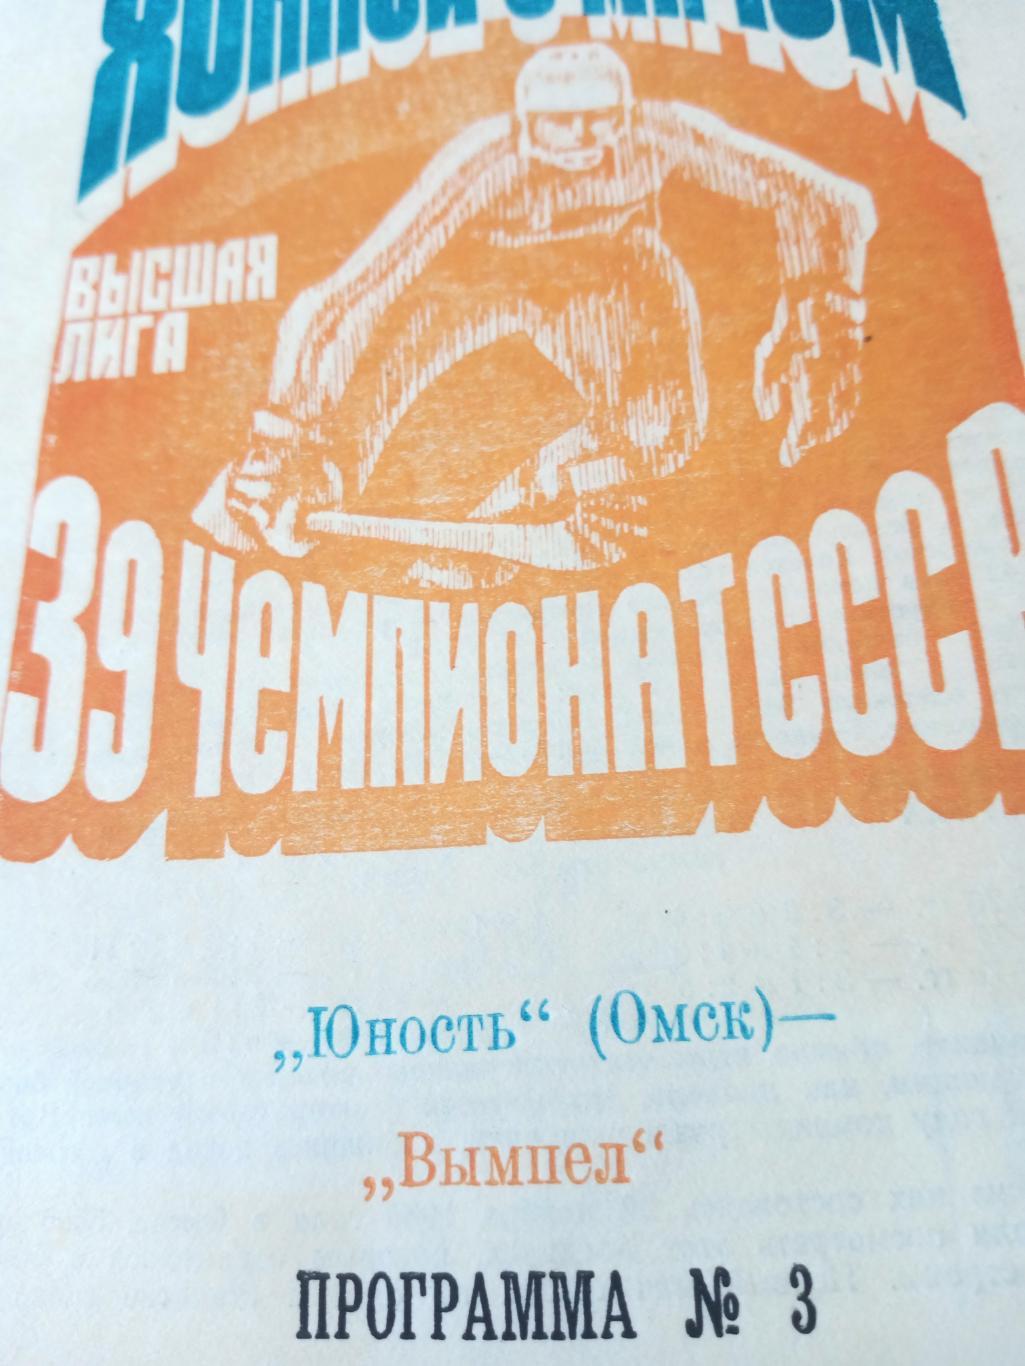 +Газетный отчет. Юность Омск - Вымпел Калининград. 27 ноября 1986 год